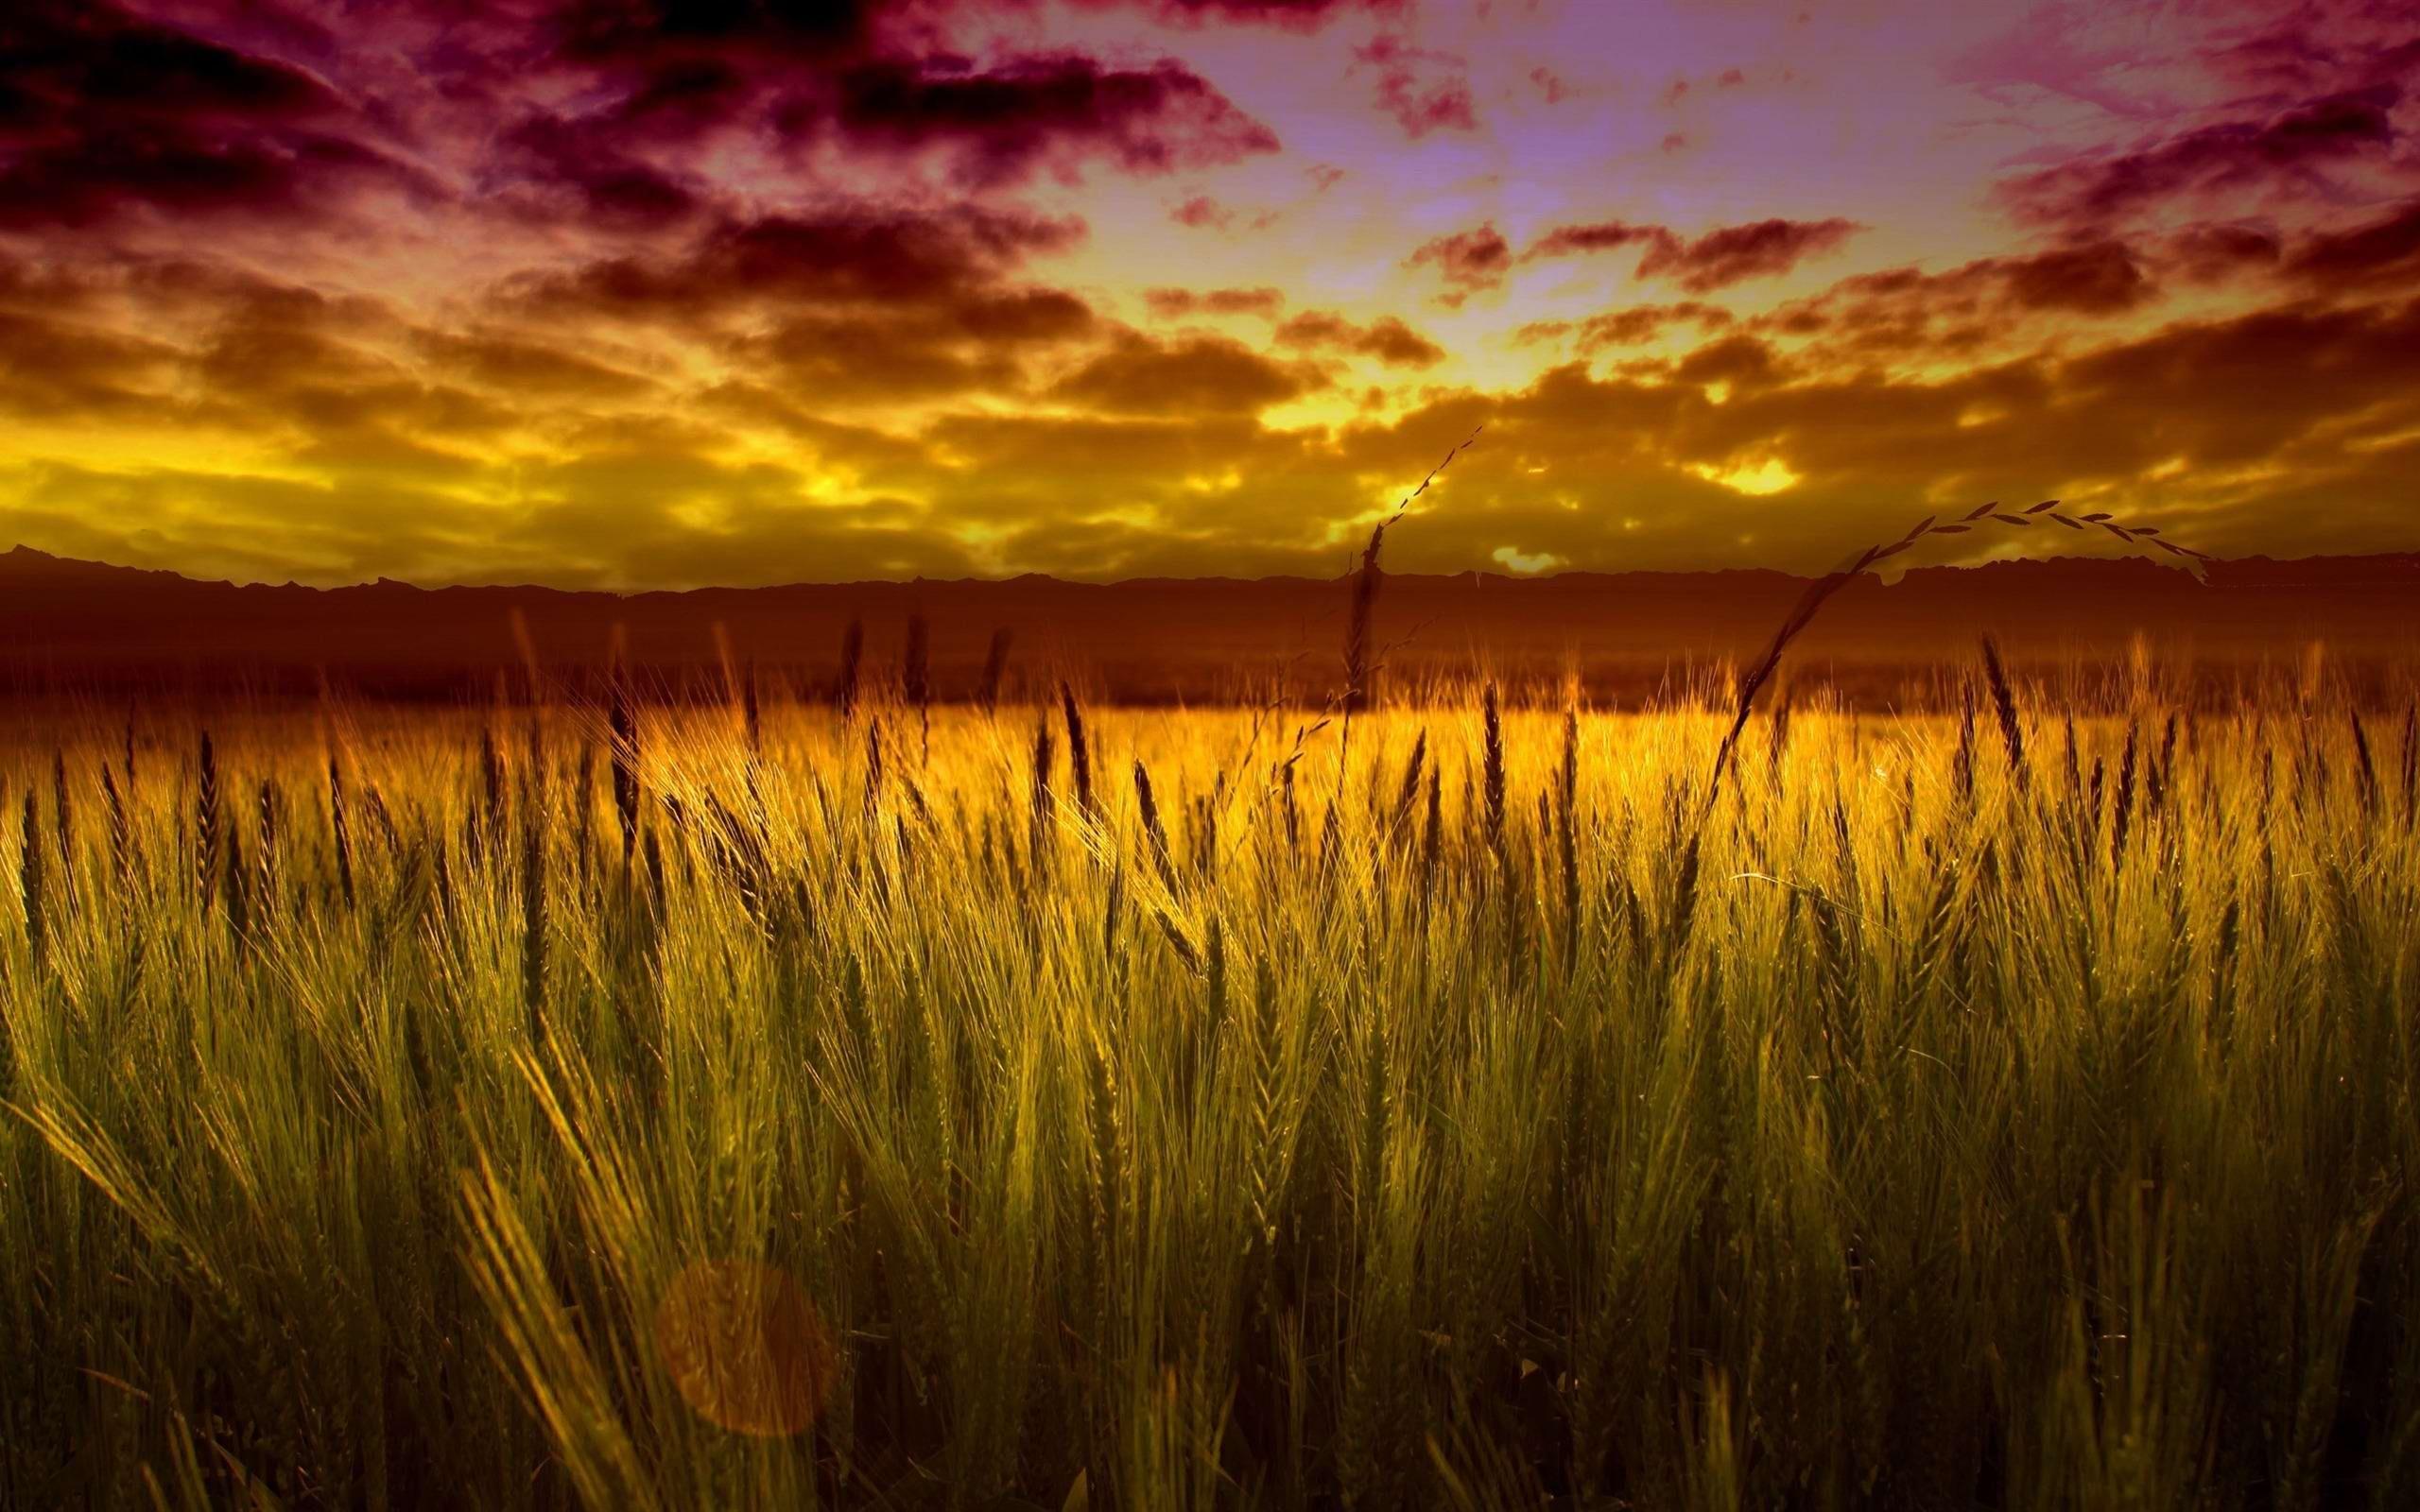 Sunset Field HD Wallpaper. Sunset Field Image. Cool Wallpaper